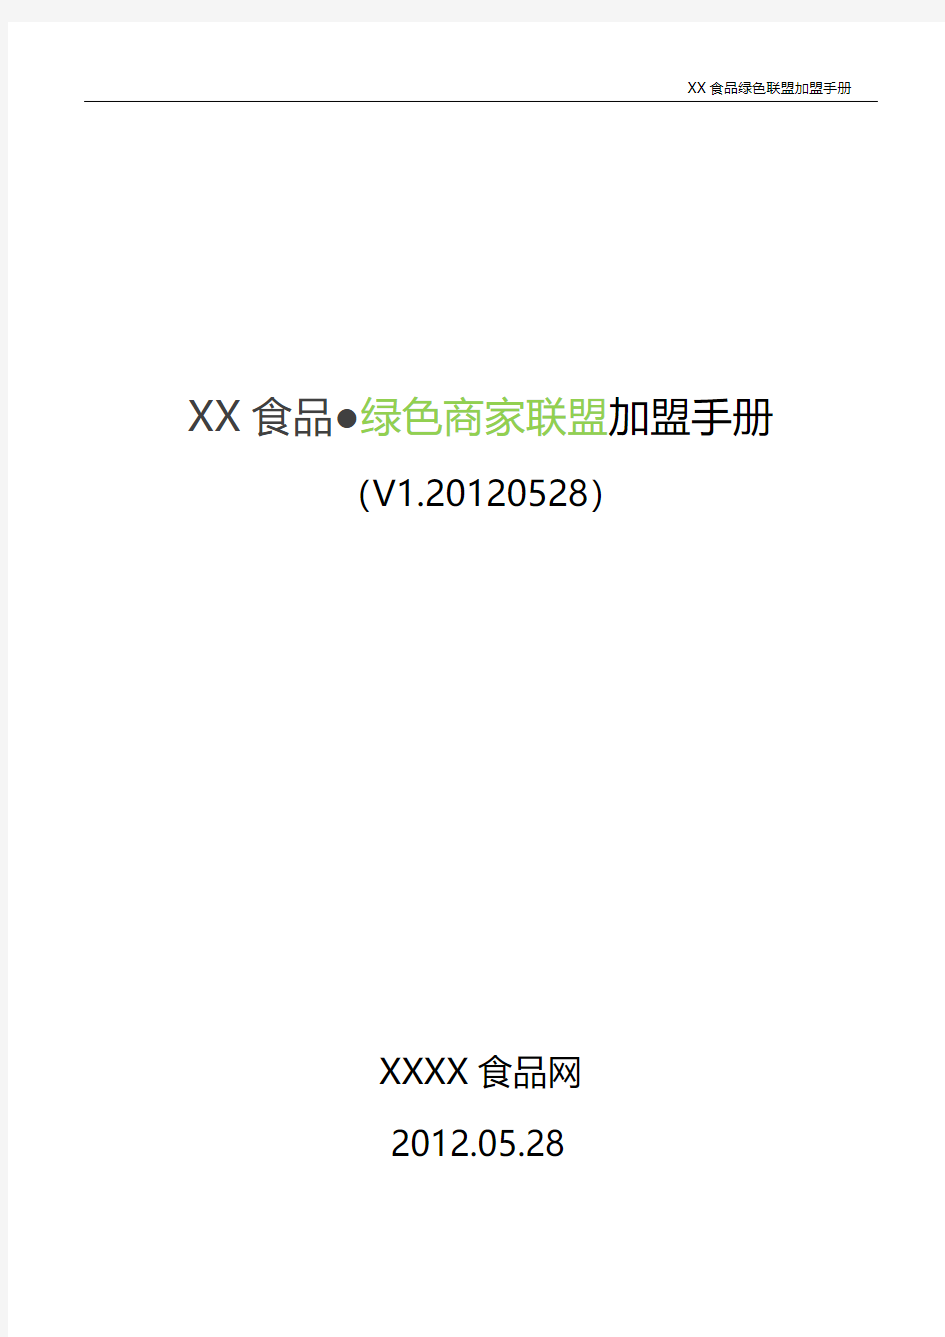 xx食品绿色联盟加盟手册V1.20120529